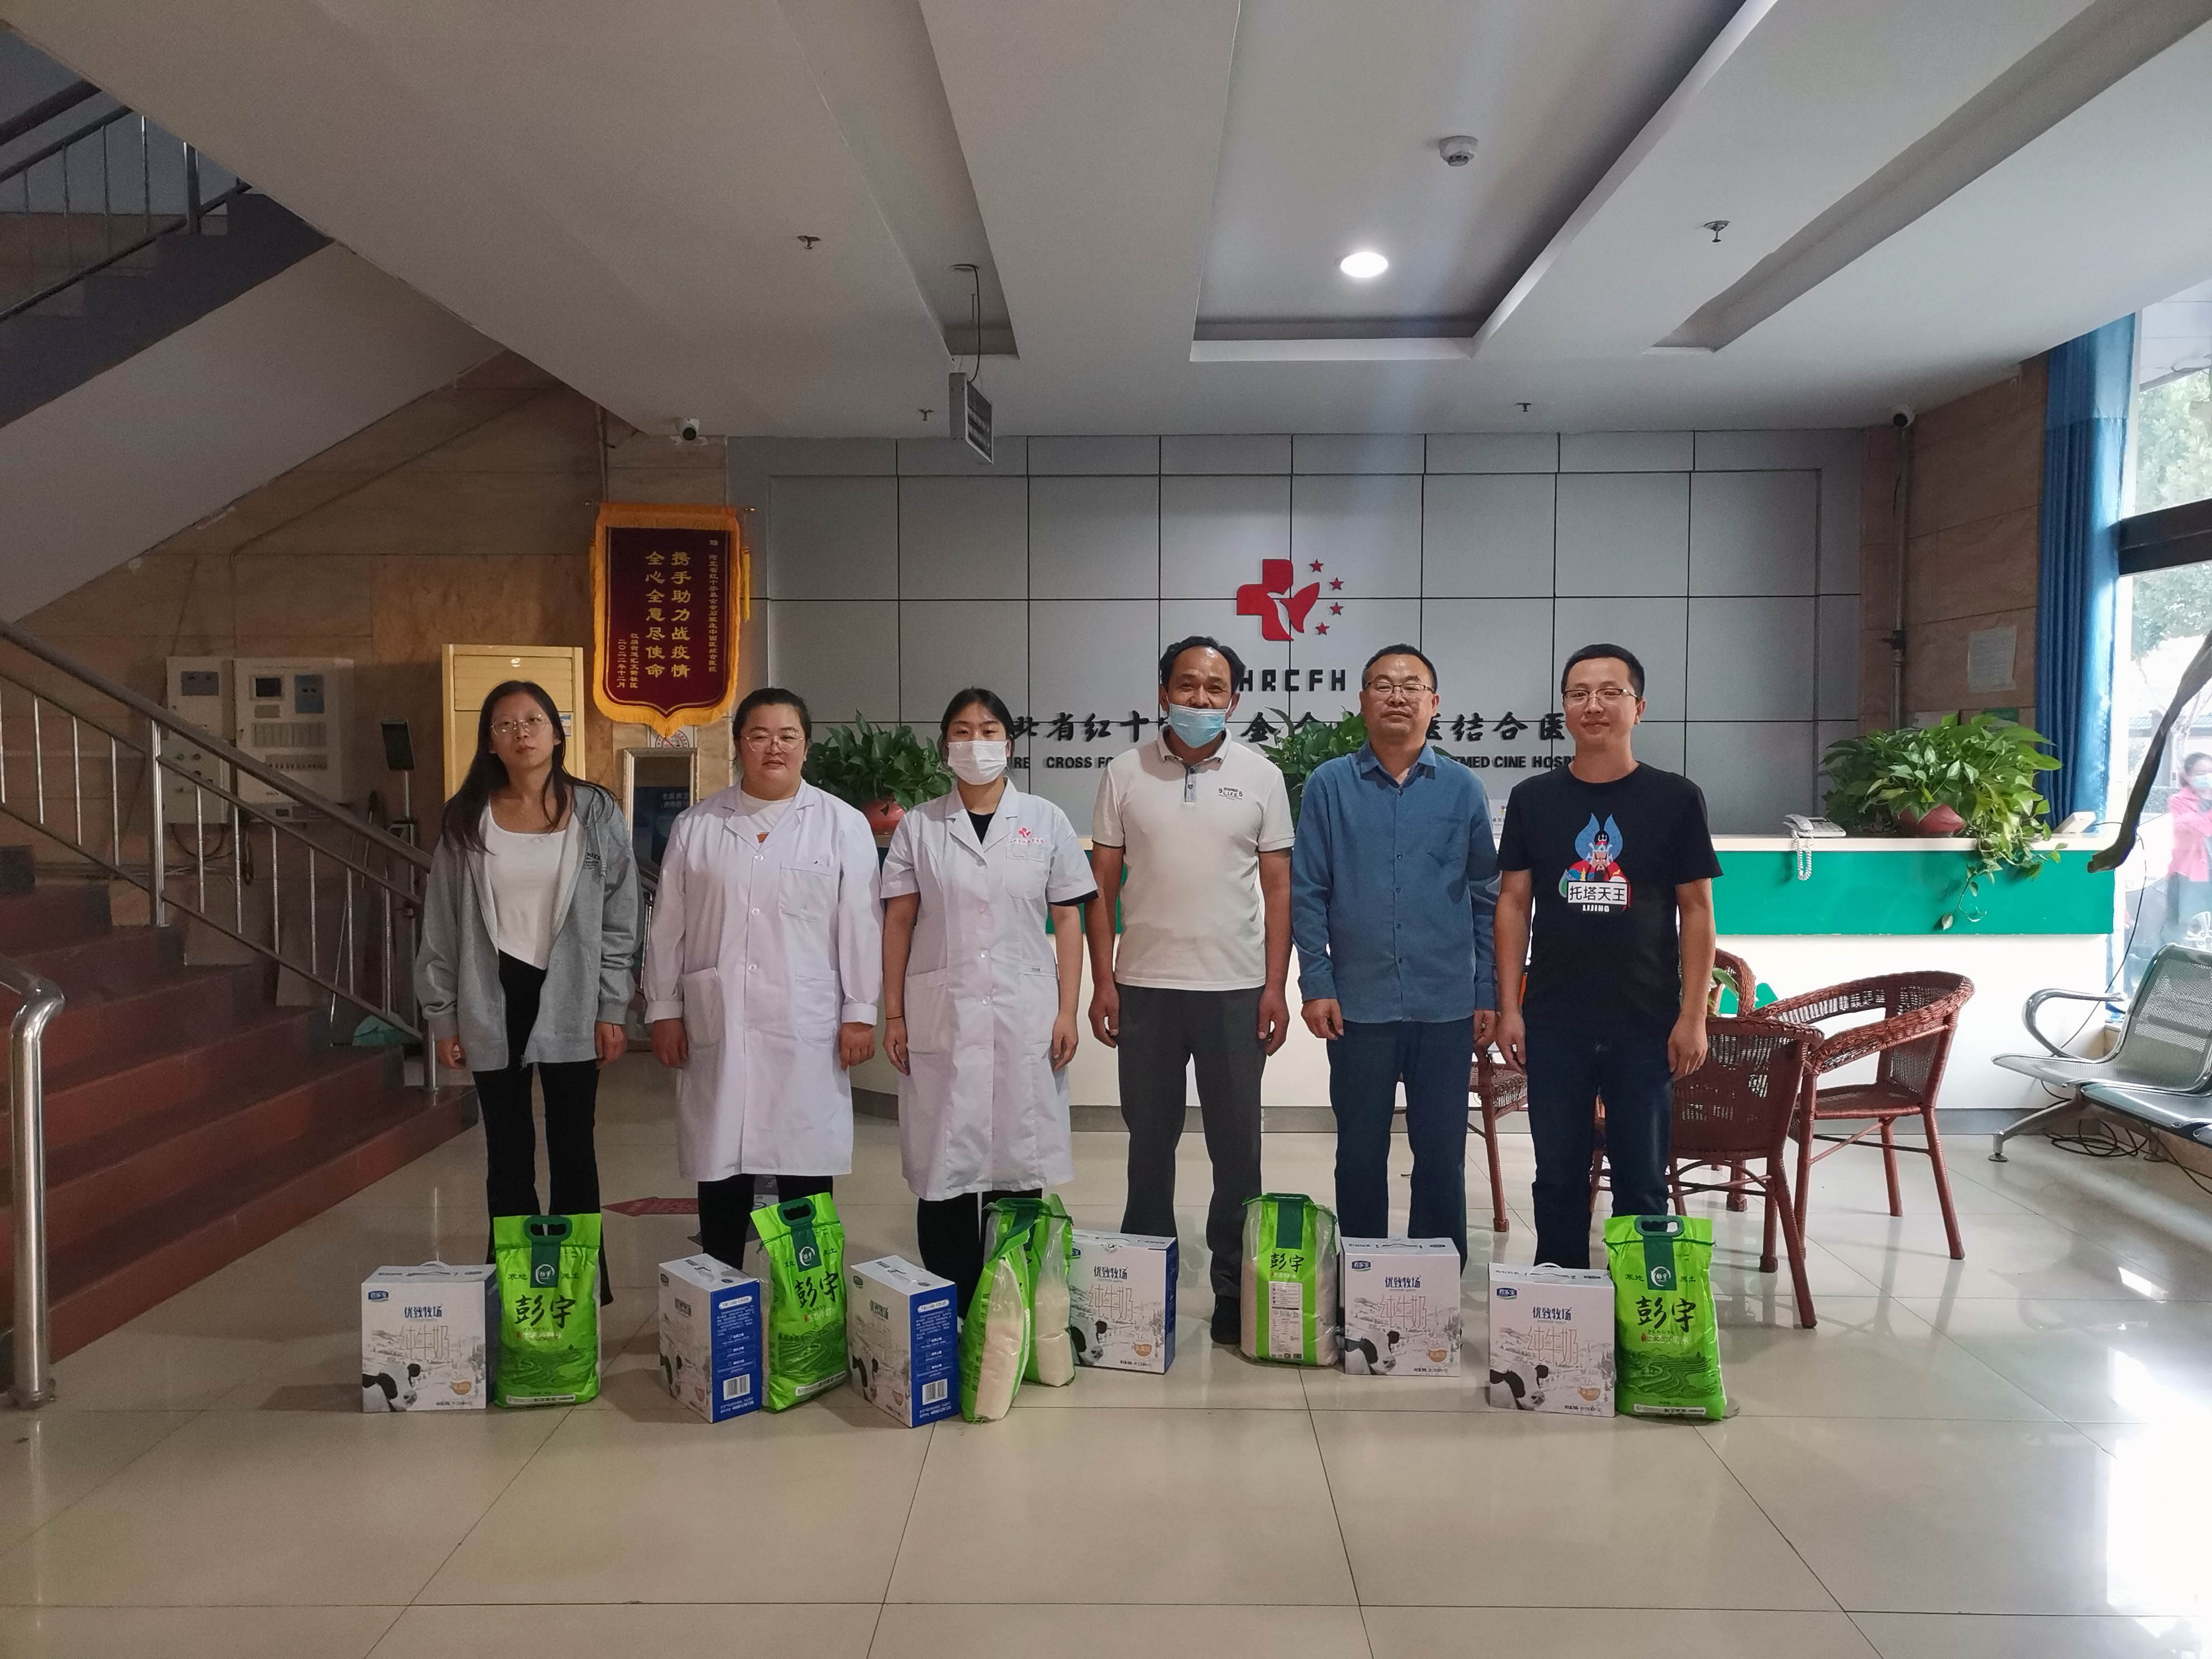 礼遇中秋，佳节共庆 | 河北省红十字基金会医院为全体员工